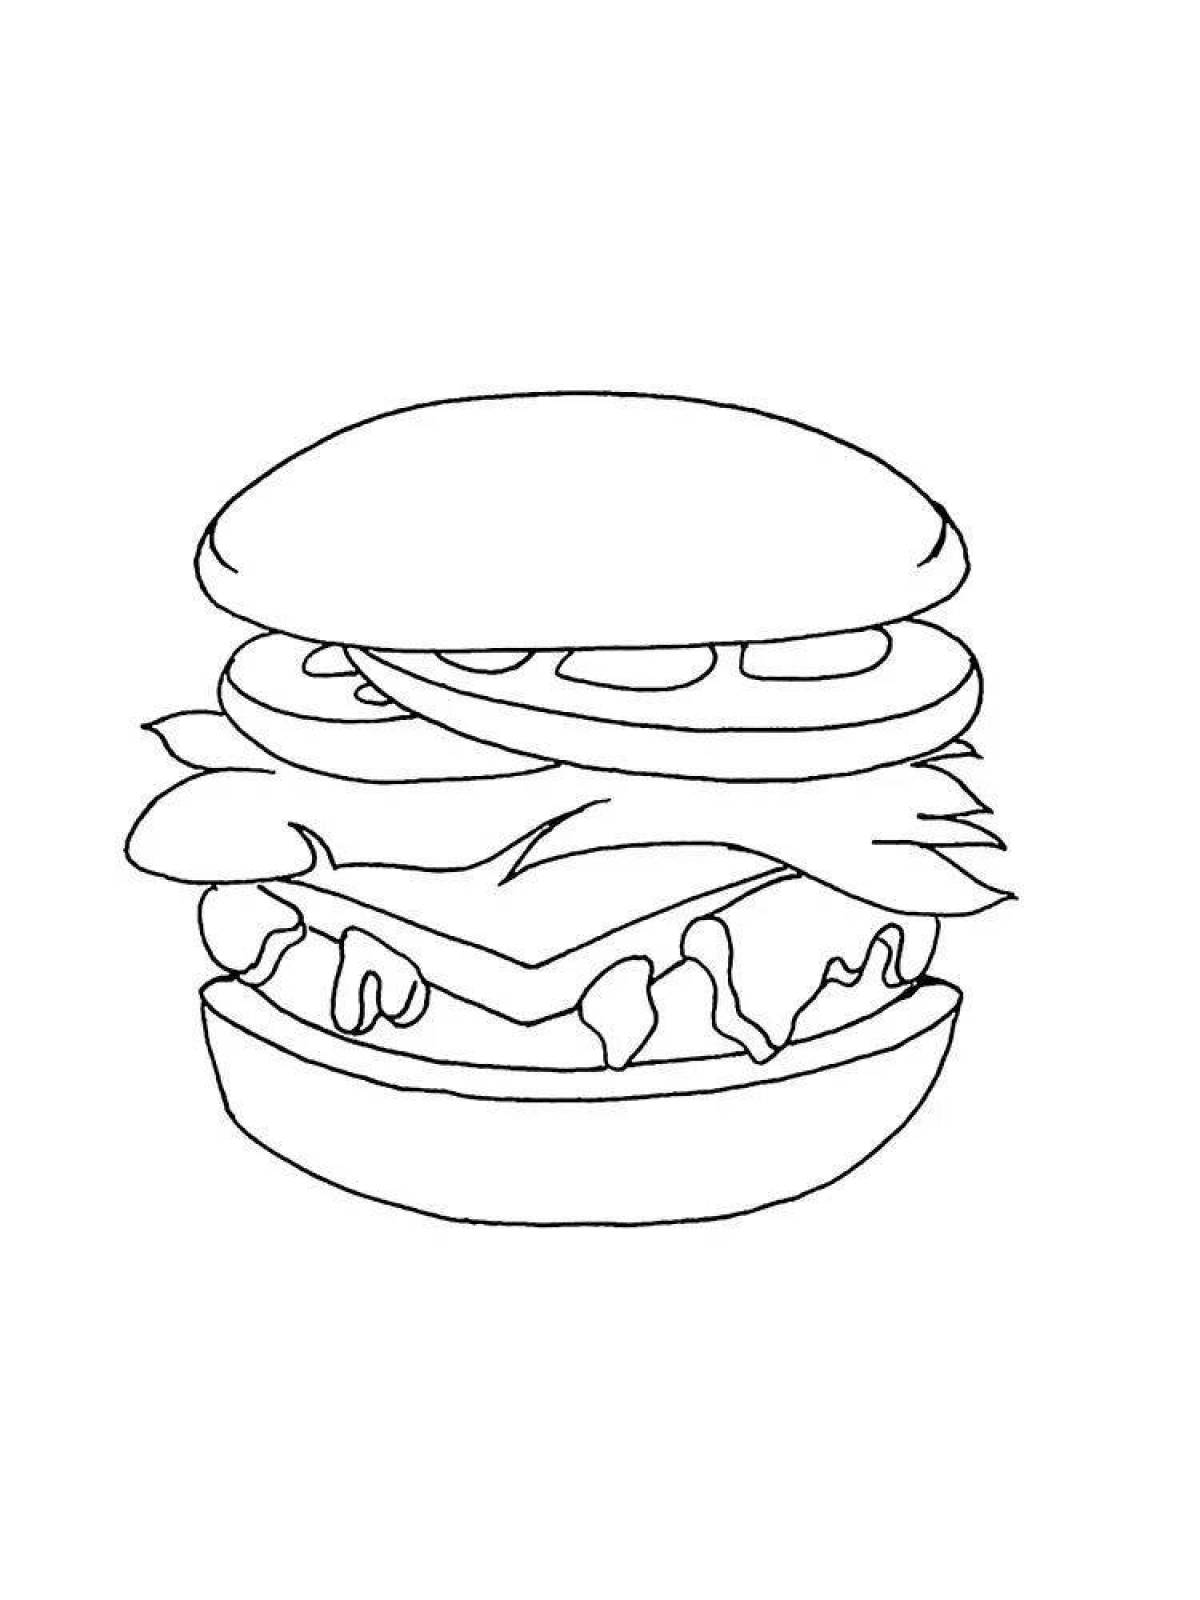 Exotic hamburger coloring page